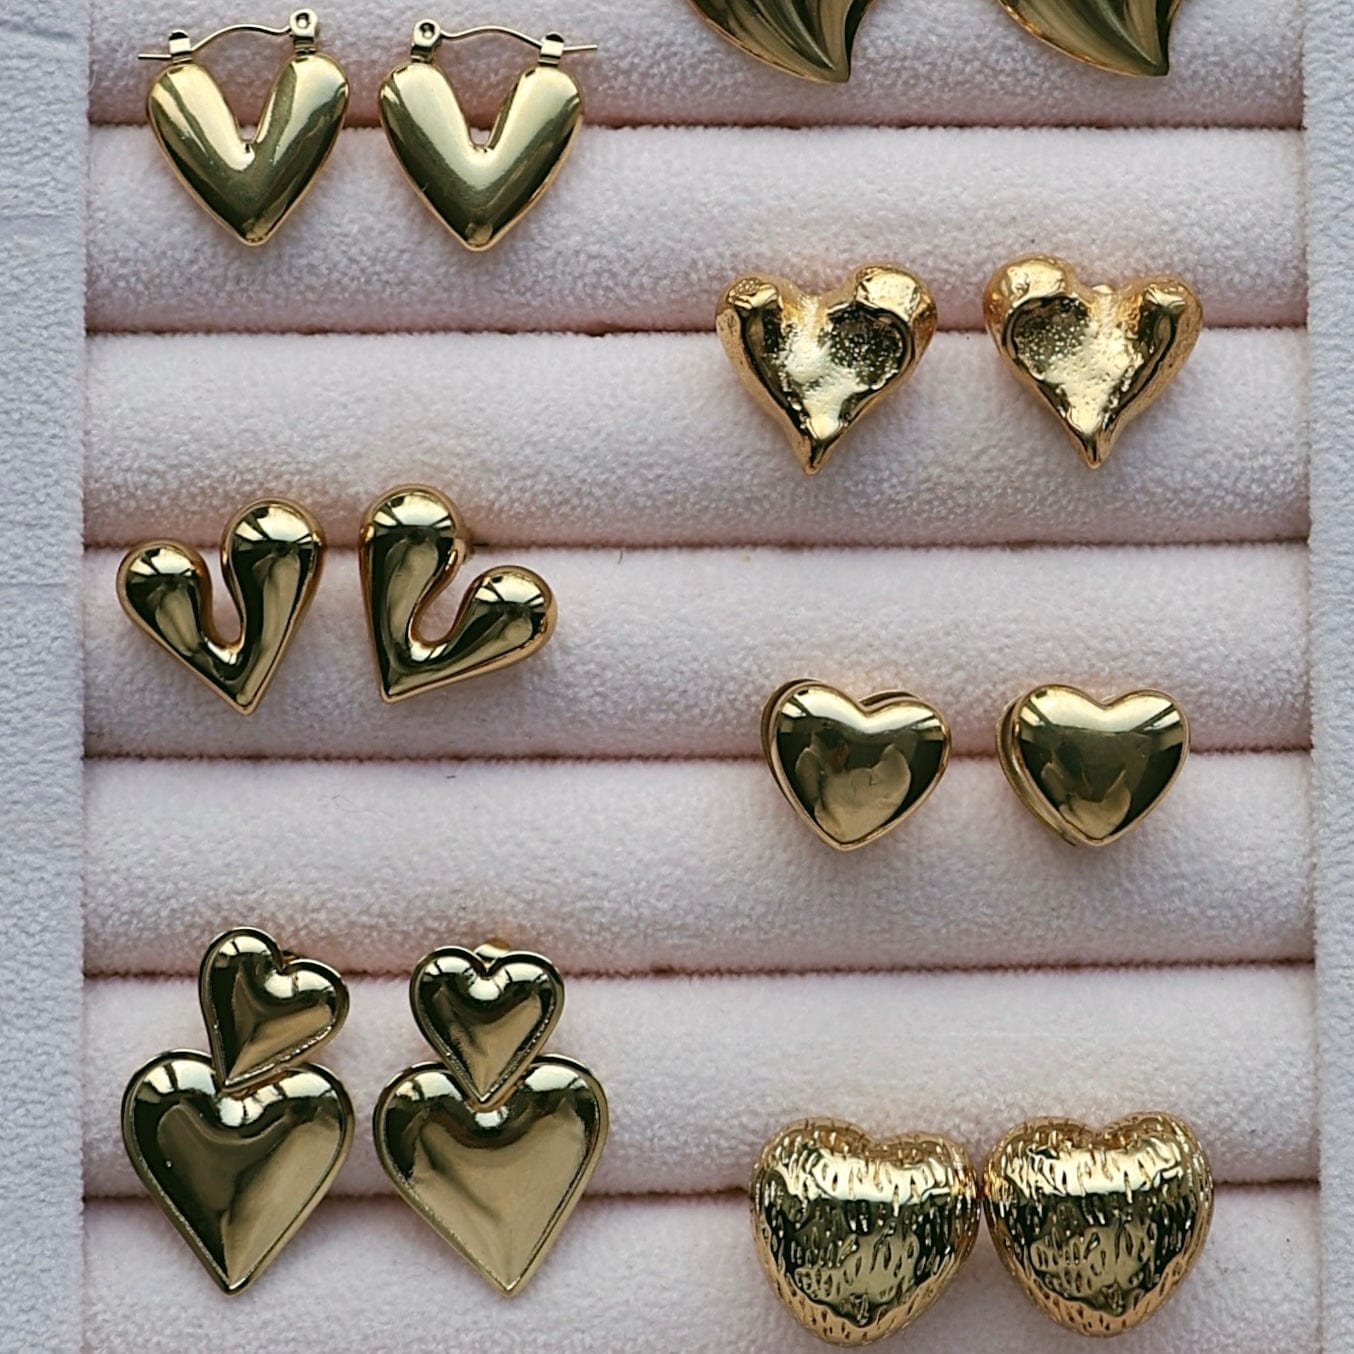 BohoMoon Stainless Steel Emira Stud Earrings Gold